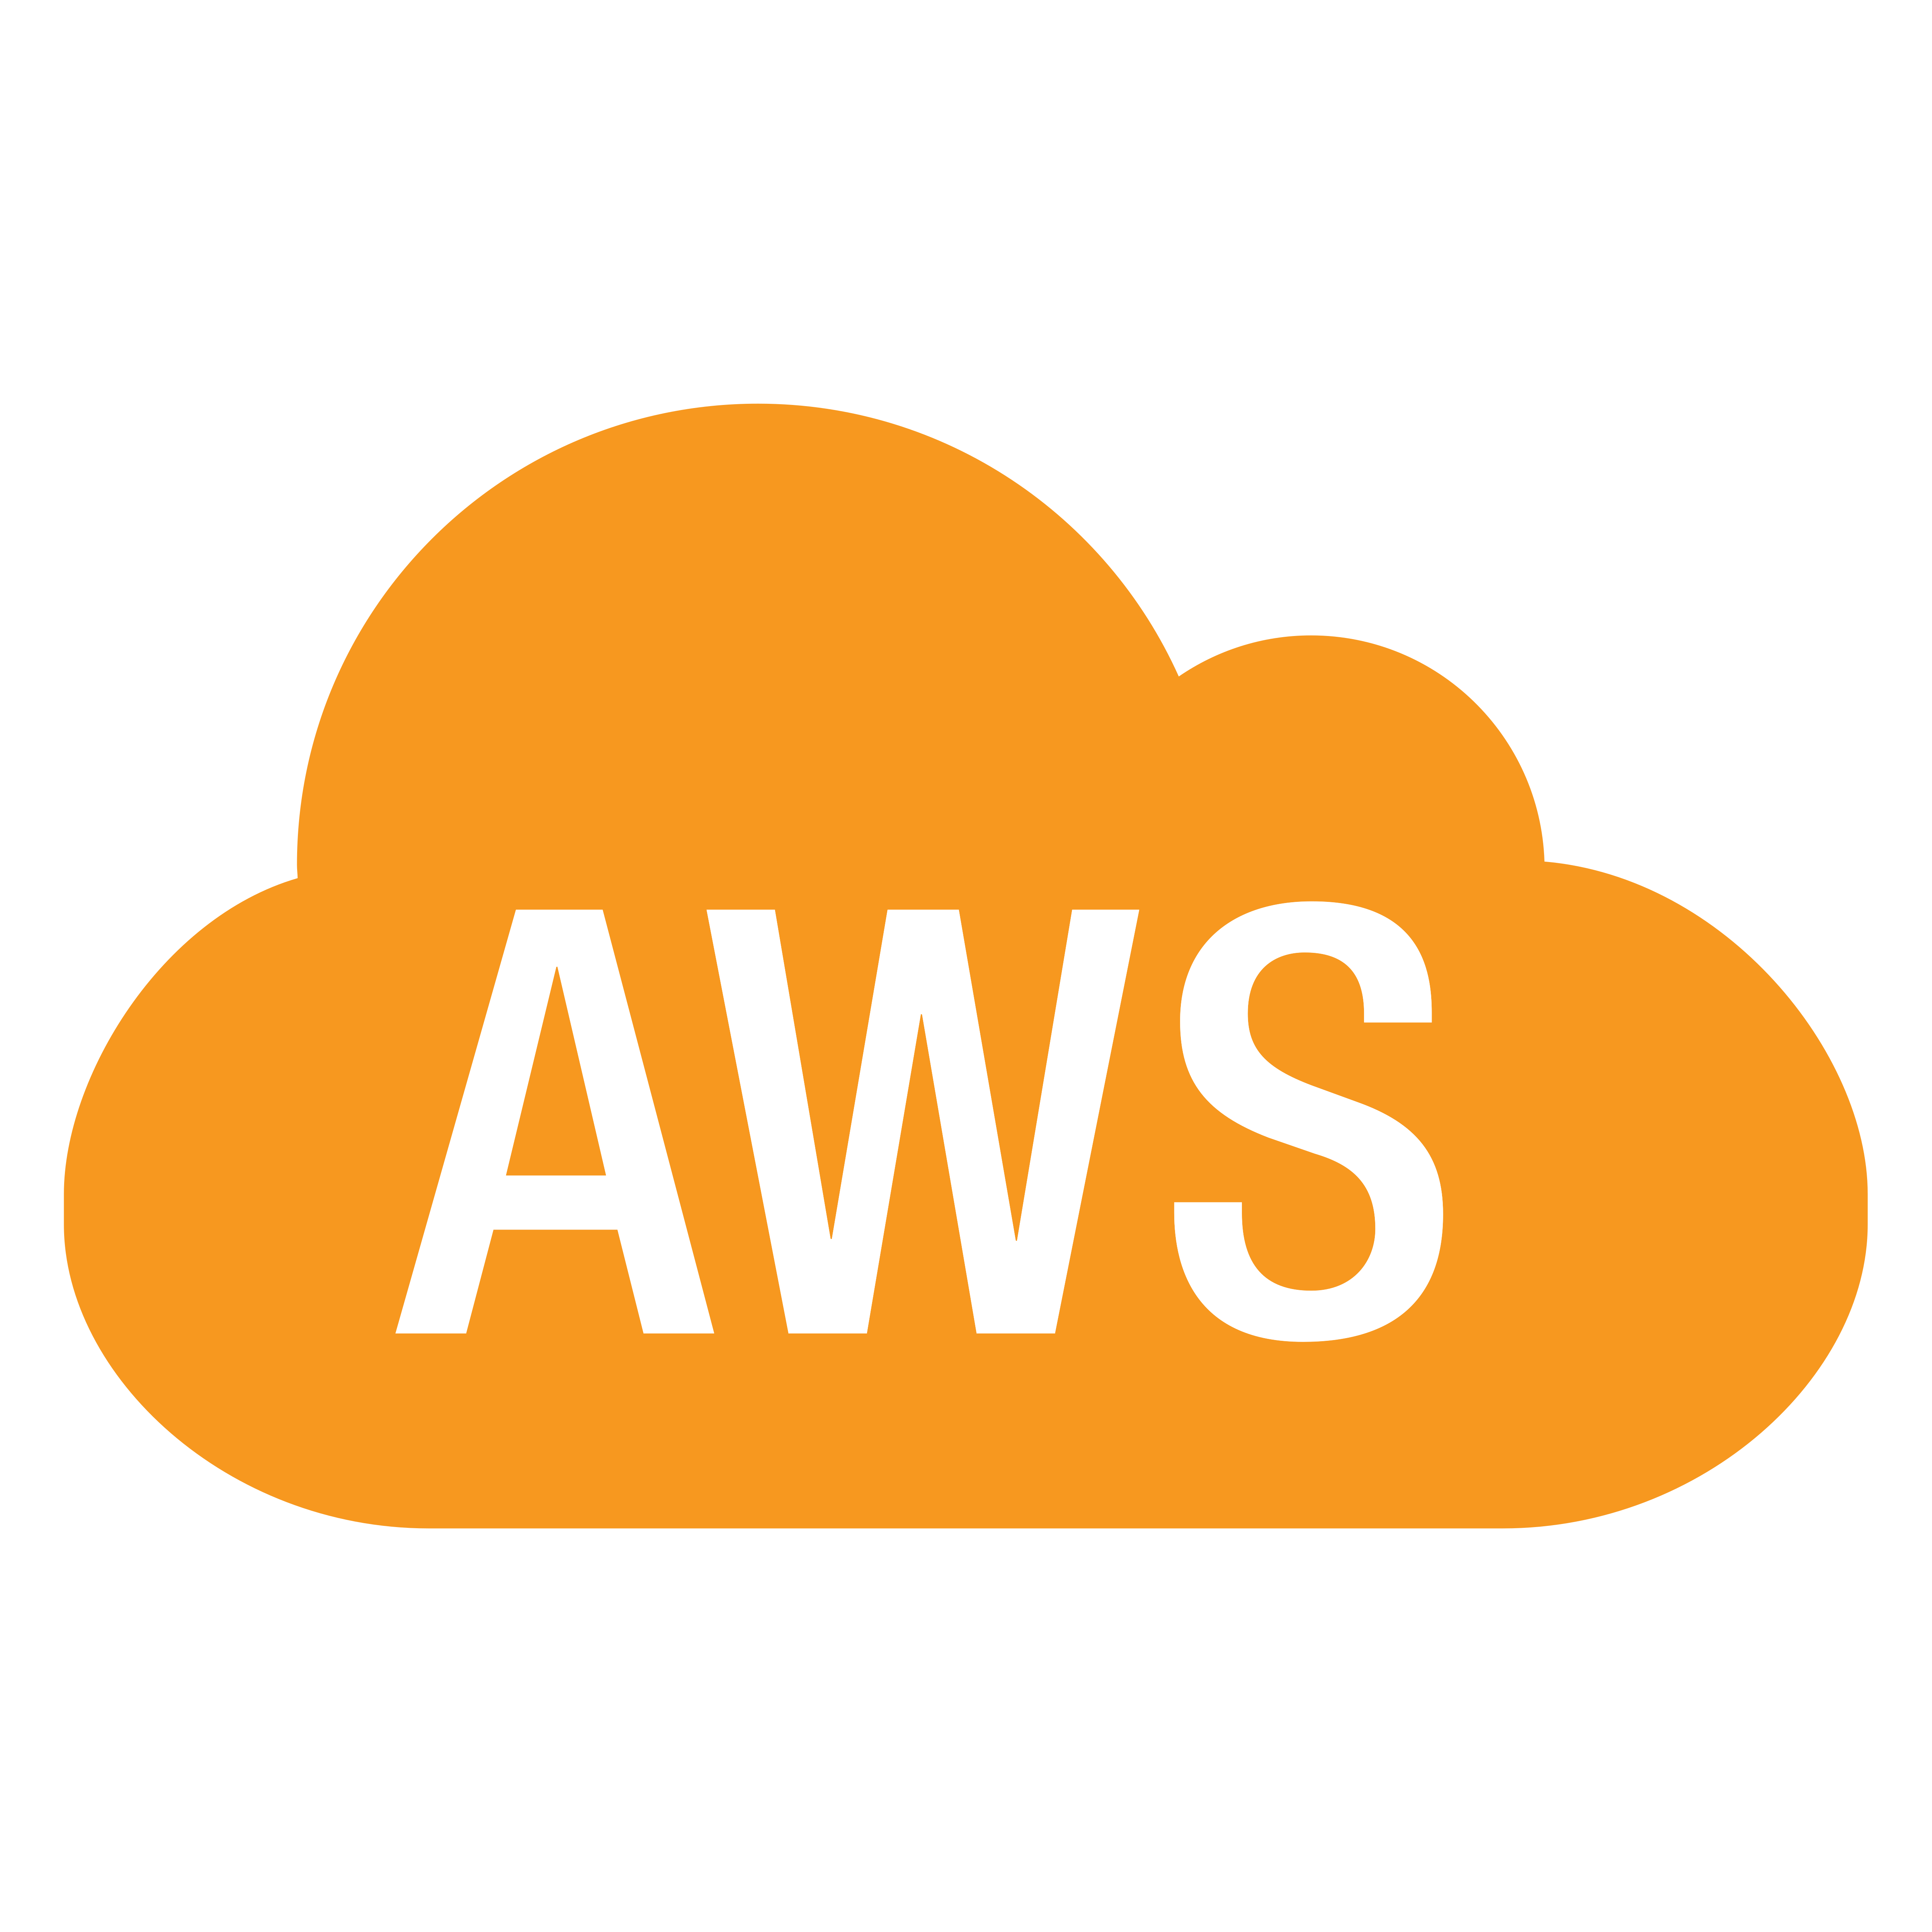 Amazon AWS Logo Transparent Image